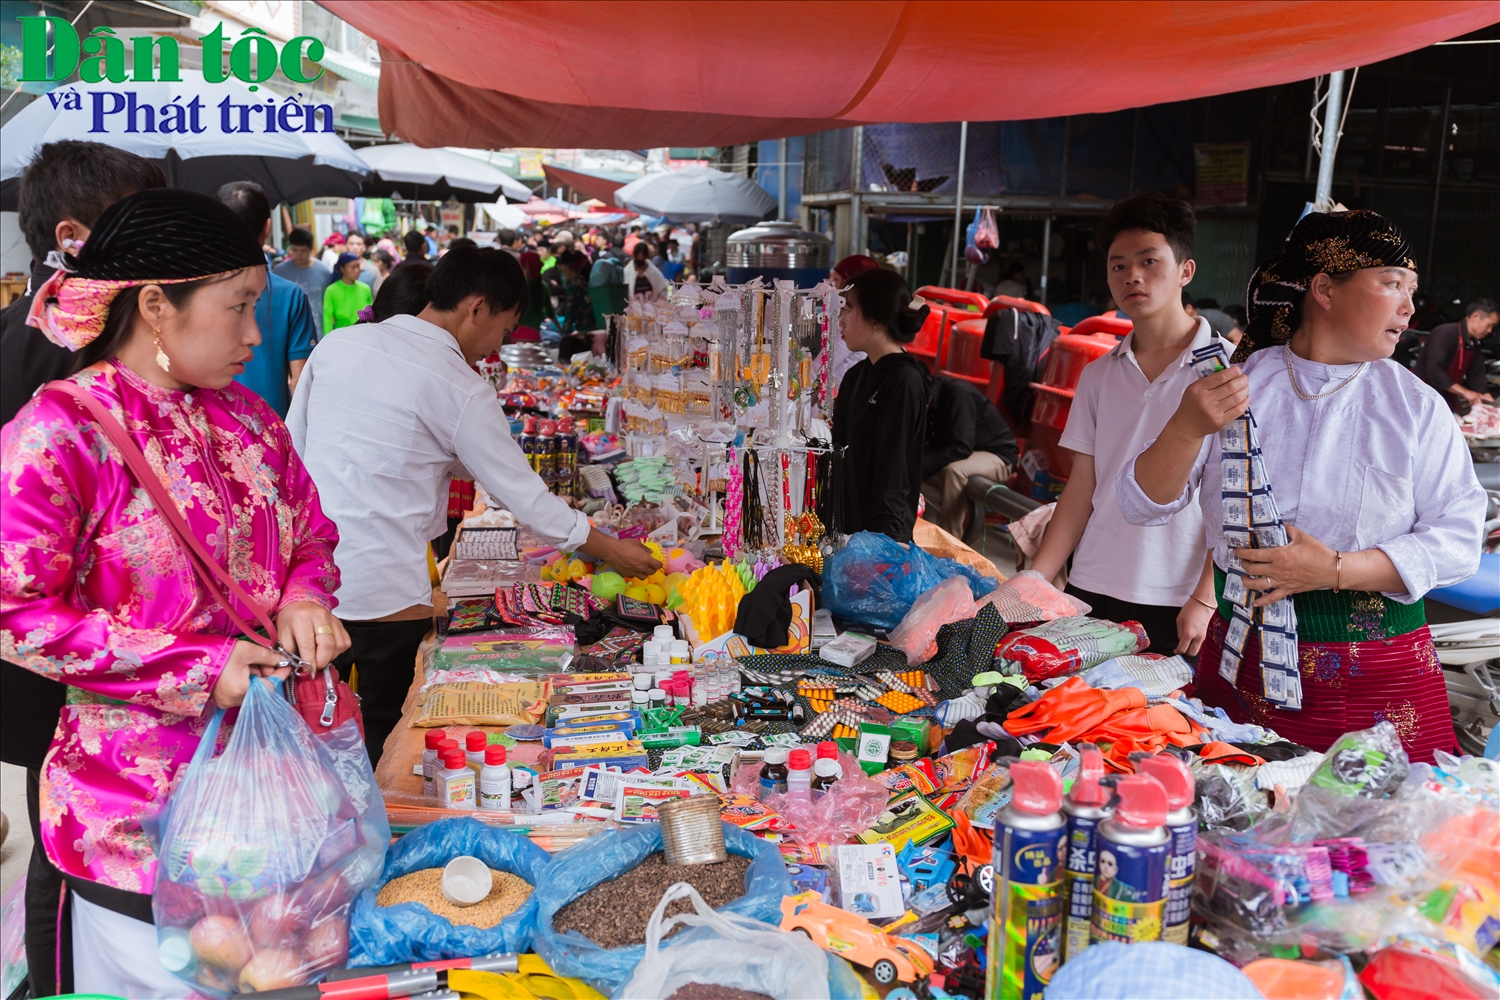 Hạt giống và thuốc bảo vệ thực vật là mặt hàng được nhiều người tìm mua tại chợ phiên Đồng Văn.